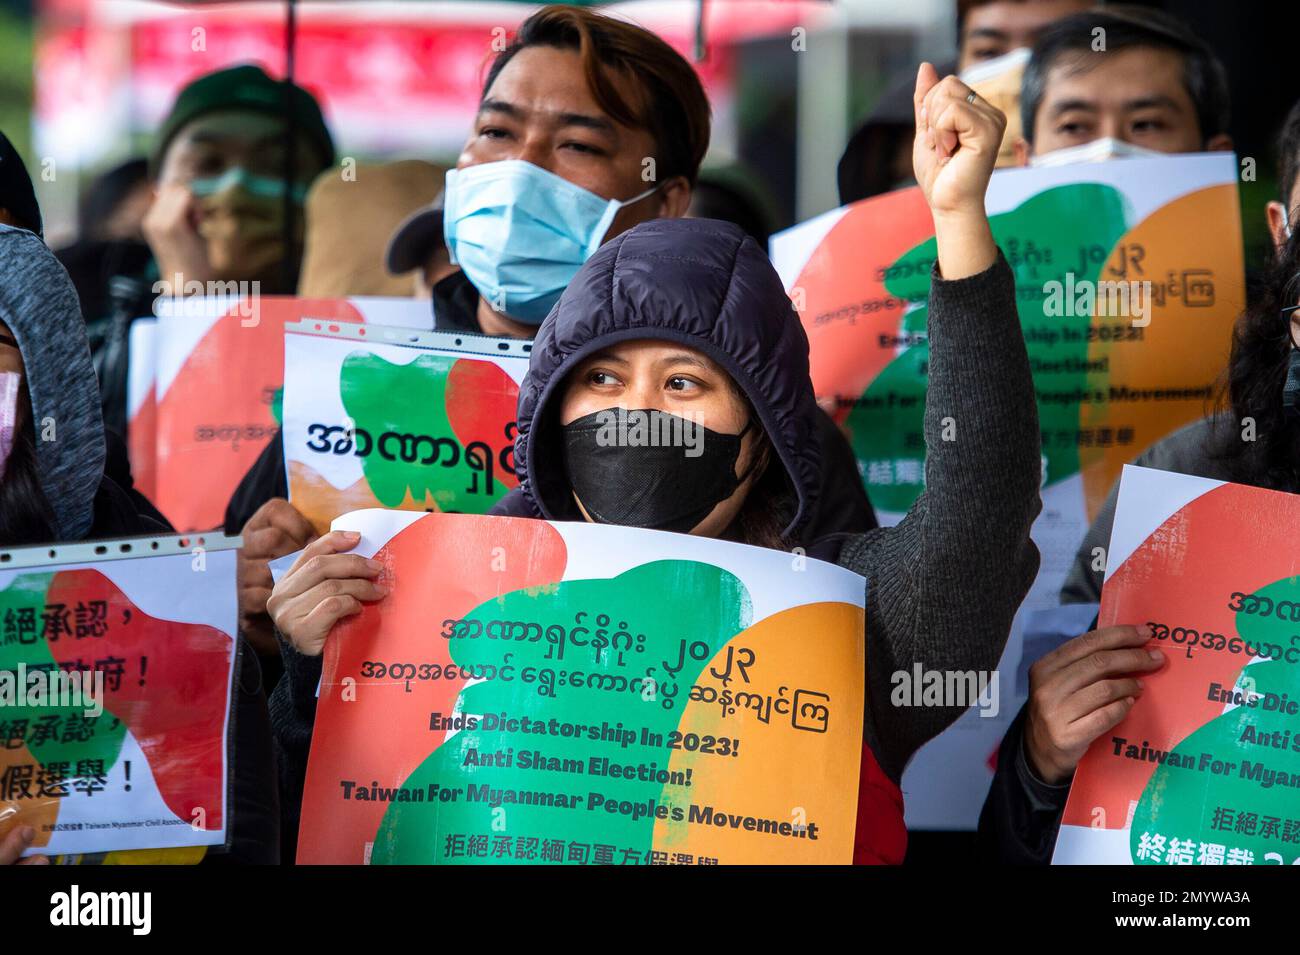 L'Alleanza di Taiwan per il Myanmar e le organizzazioni per i diritti umani protestano a Taipei, Taiwan, il 05/02/2023, per celebrare due anni di golpe militare e due anni di rivolte birmane. I manifestanti rifiutano di riconoscere le elezioni in Myanmar, esortando il governo taiwanese a spezzare le relazioni con il suo governo. Di Wiktor Dabkowski Foto Stock